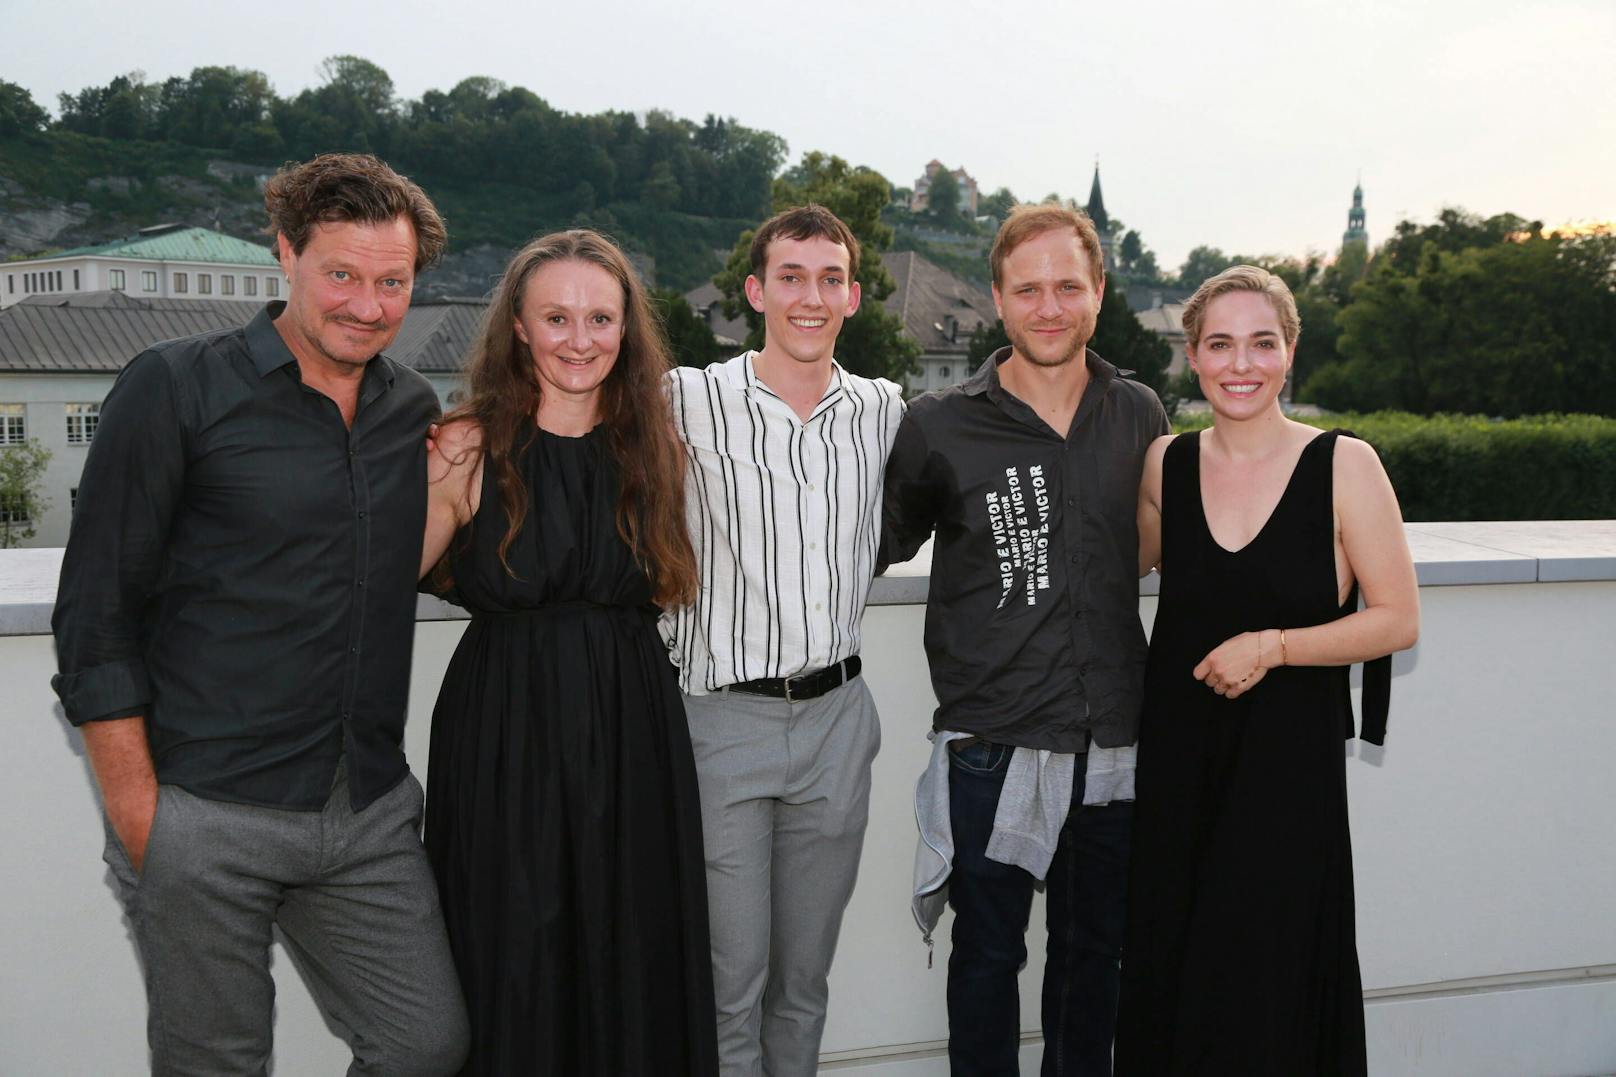  Verena Altenberger mit ihren Filmkollegen bei der Premiere von "Märzengrund". 